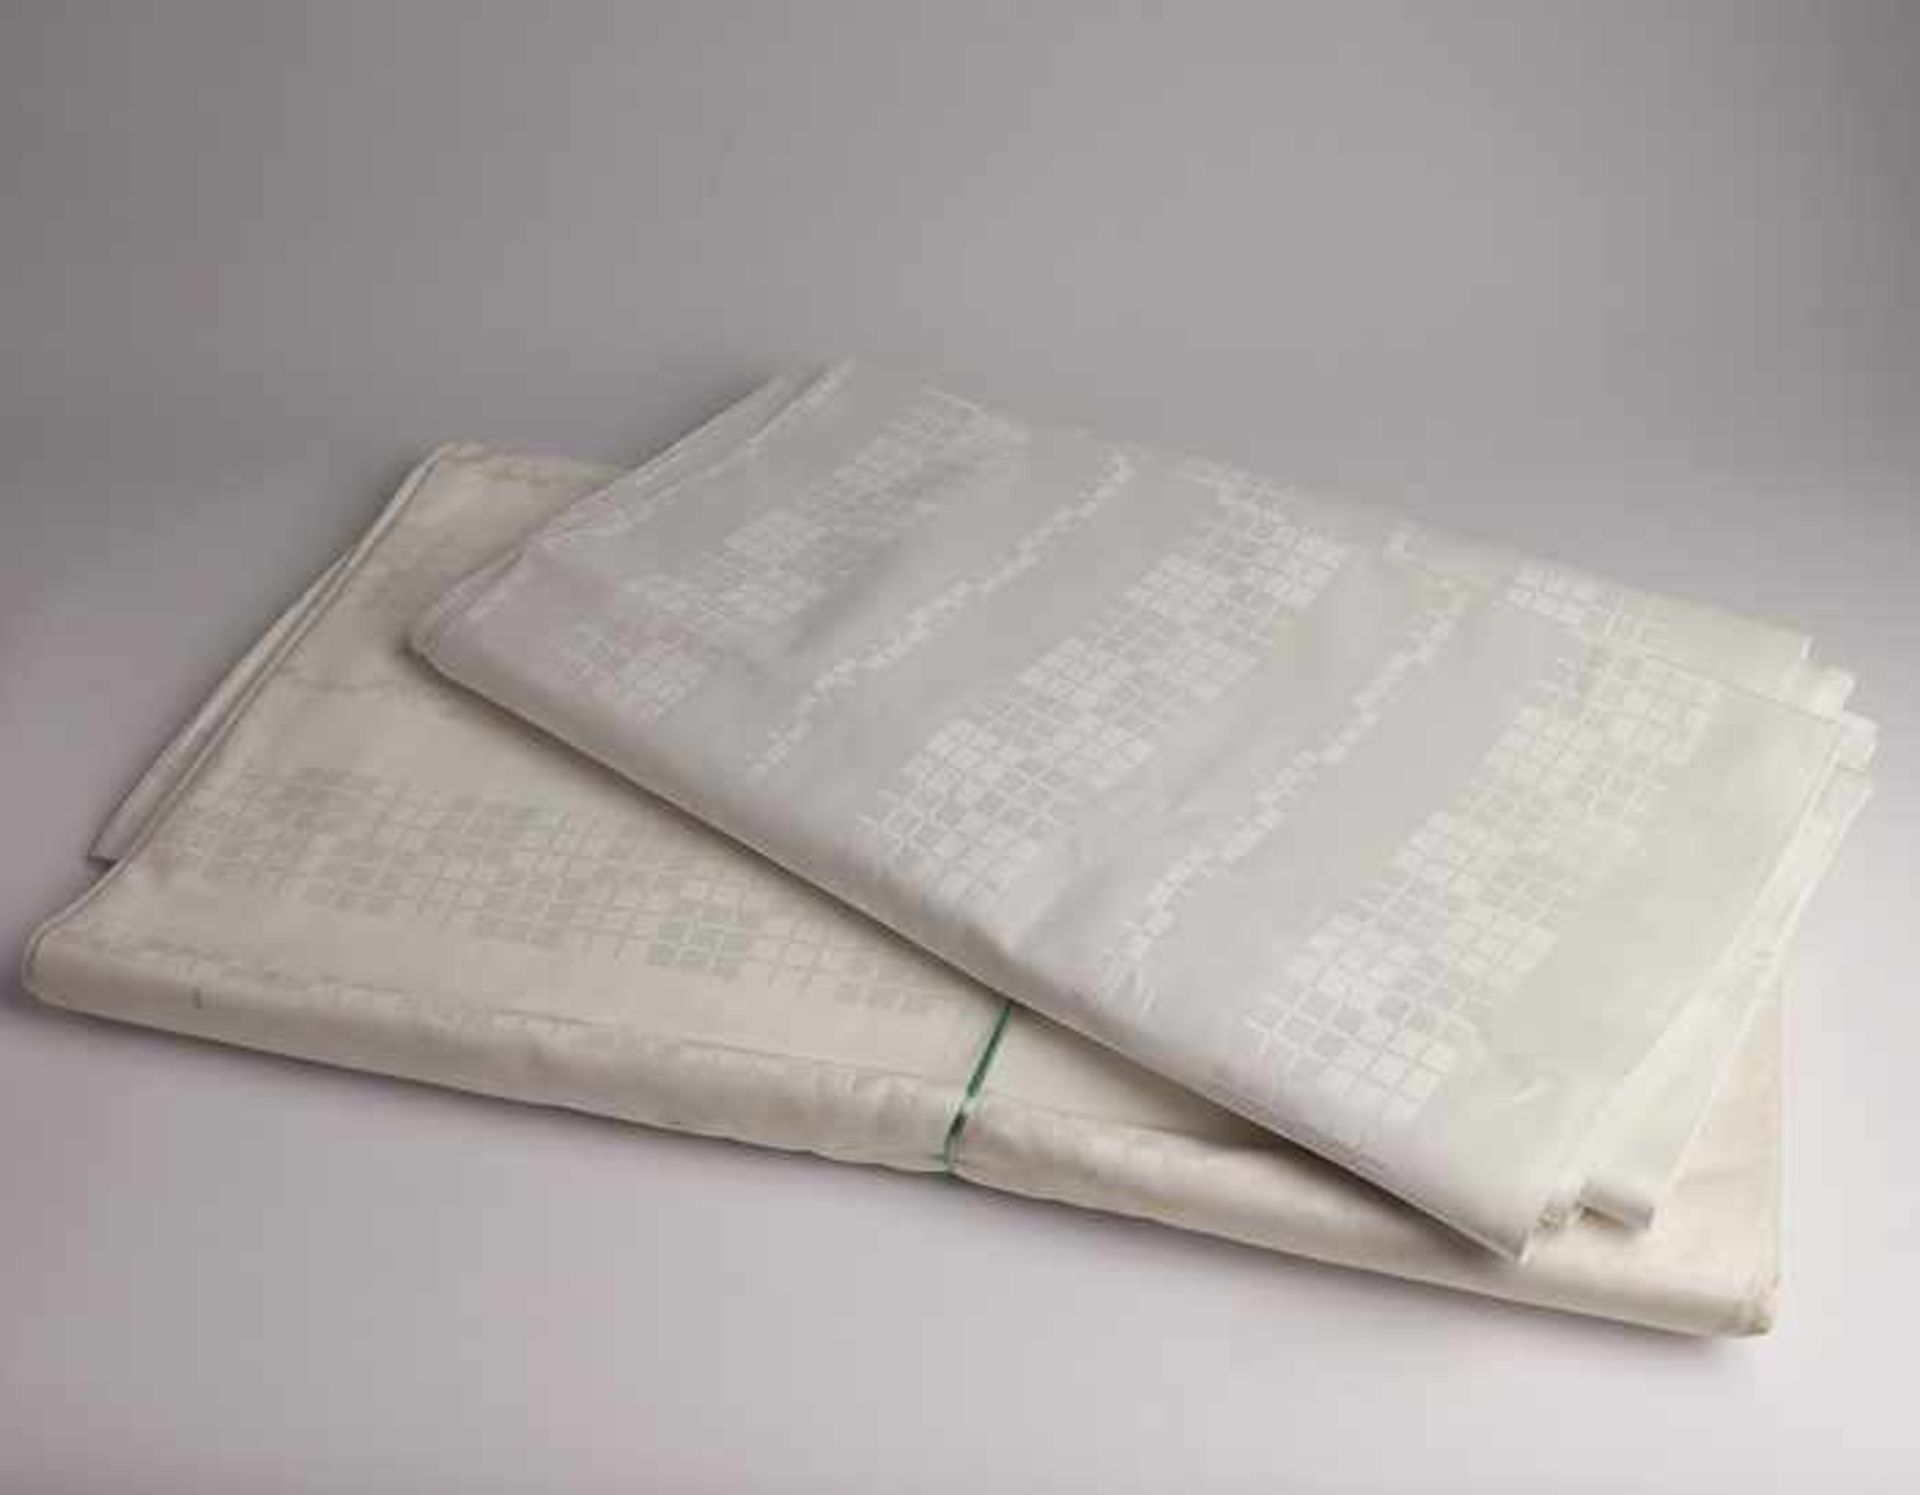 Meterwareweiße Baumwolle, Würfeldekor, für Bettwäsche, 2 Teile, ca. 80 x 670 cm u. 160 x 750 - Bild 2 aus 2